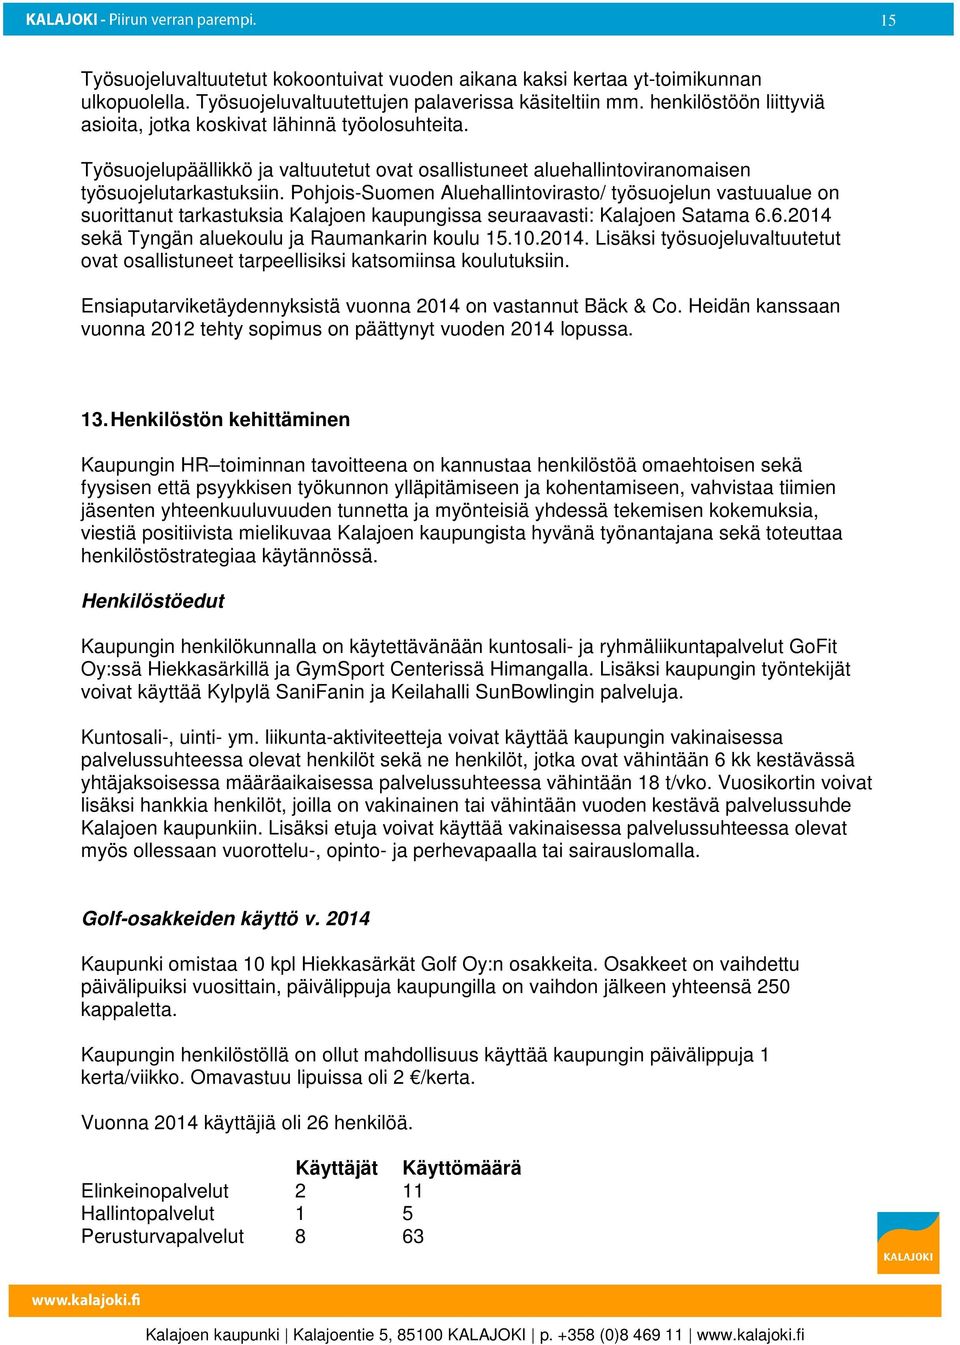 Pohjois-Suomen Aluehallintovirasto/ työsuojelun vastuualue on suorittanut tarkastuksia Kalajoen kaupungissa seuraavasti: Kalajoen Satama 6.6.2014 